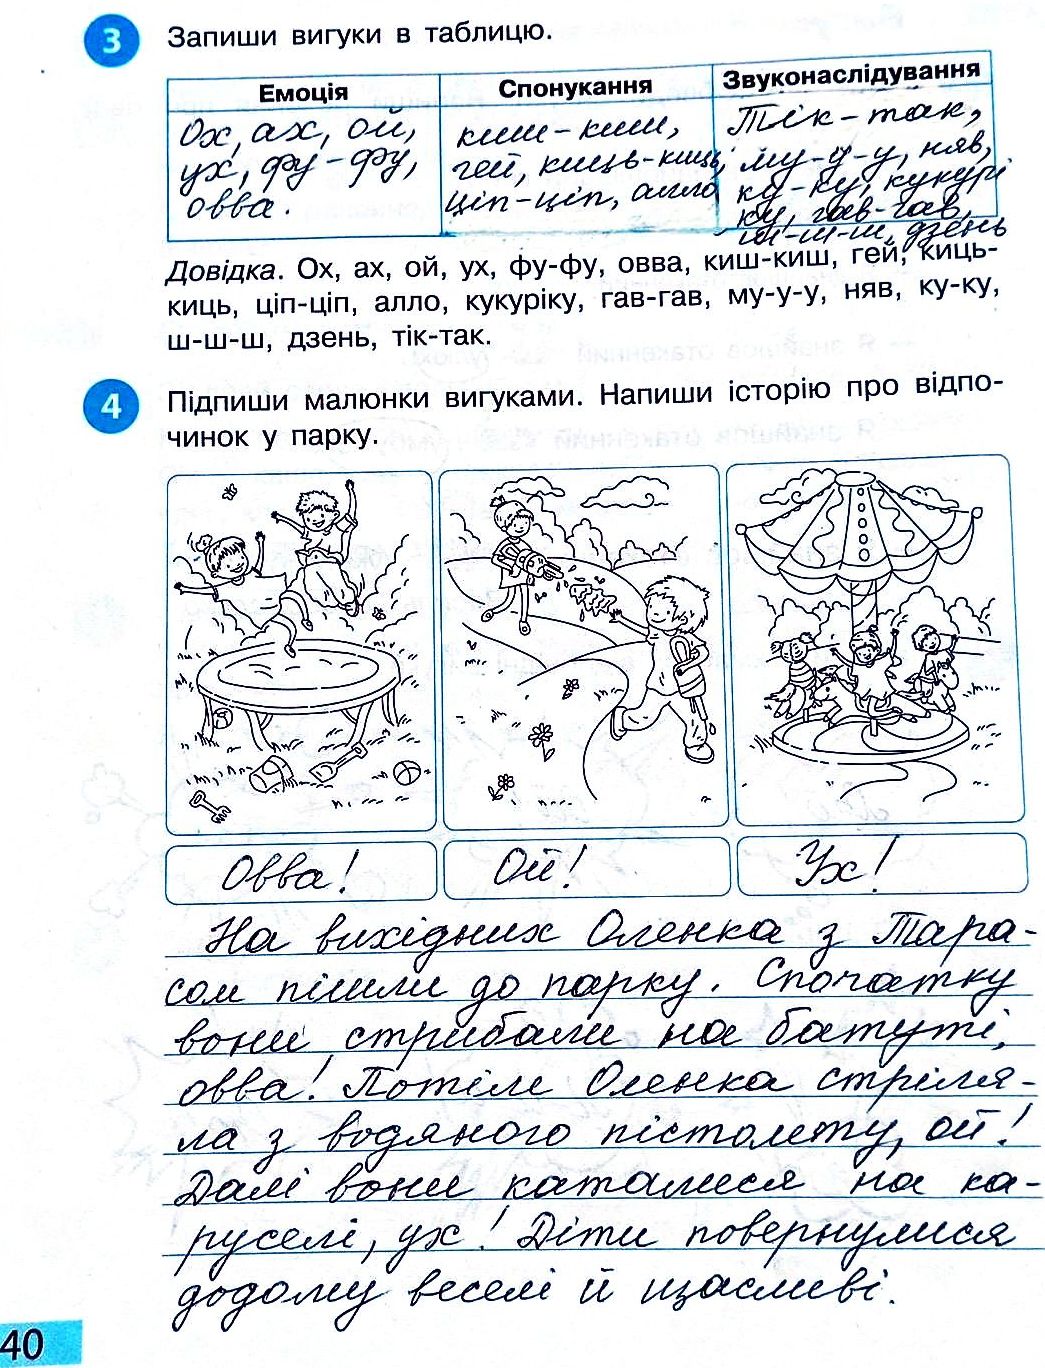 Сторінка 40 частина 2 гдз 3 клас робочий зошит українська мова Большакова